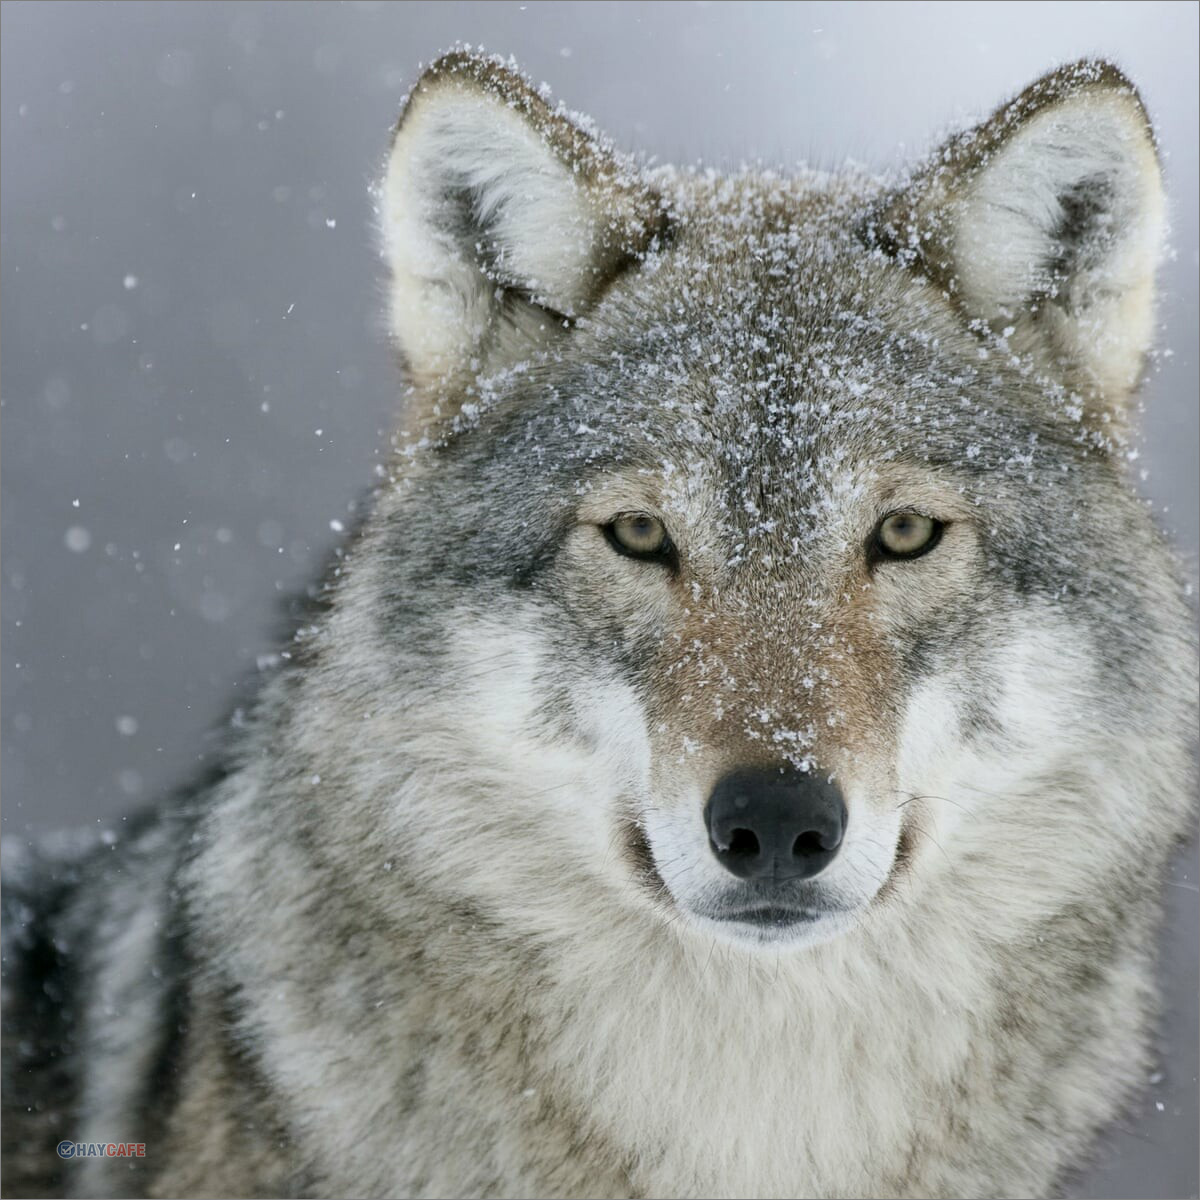 Bạn sẽ không thể tin được rằng ảnh chó sói cute có thể thật nhiều màu sắc và độc đáo. Hãy cùng xem qua bộ sưu tập ảnh chó sói đẹp và khám phá sự đa dạng của loài chó này. Chúng ta sẽ được thưởng thức những hình ảnh làm say đắm lòng người.